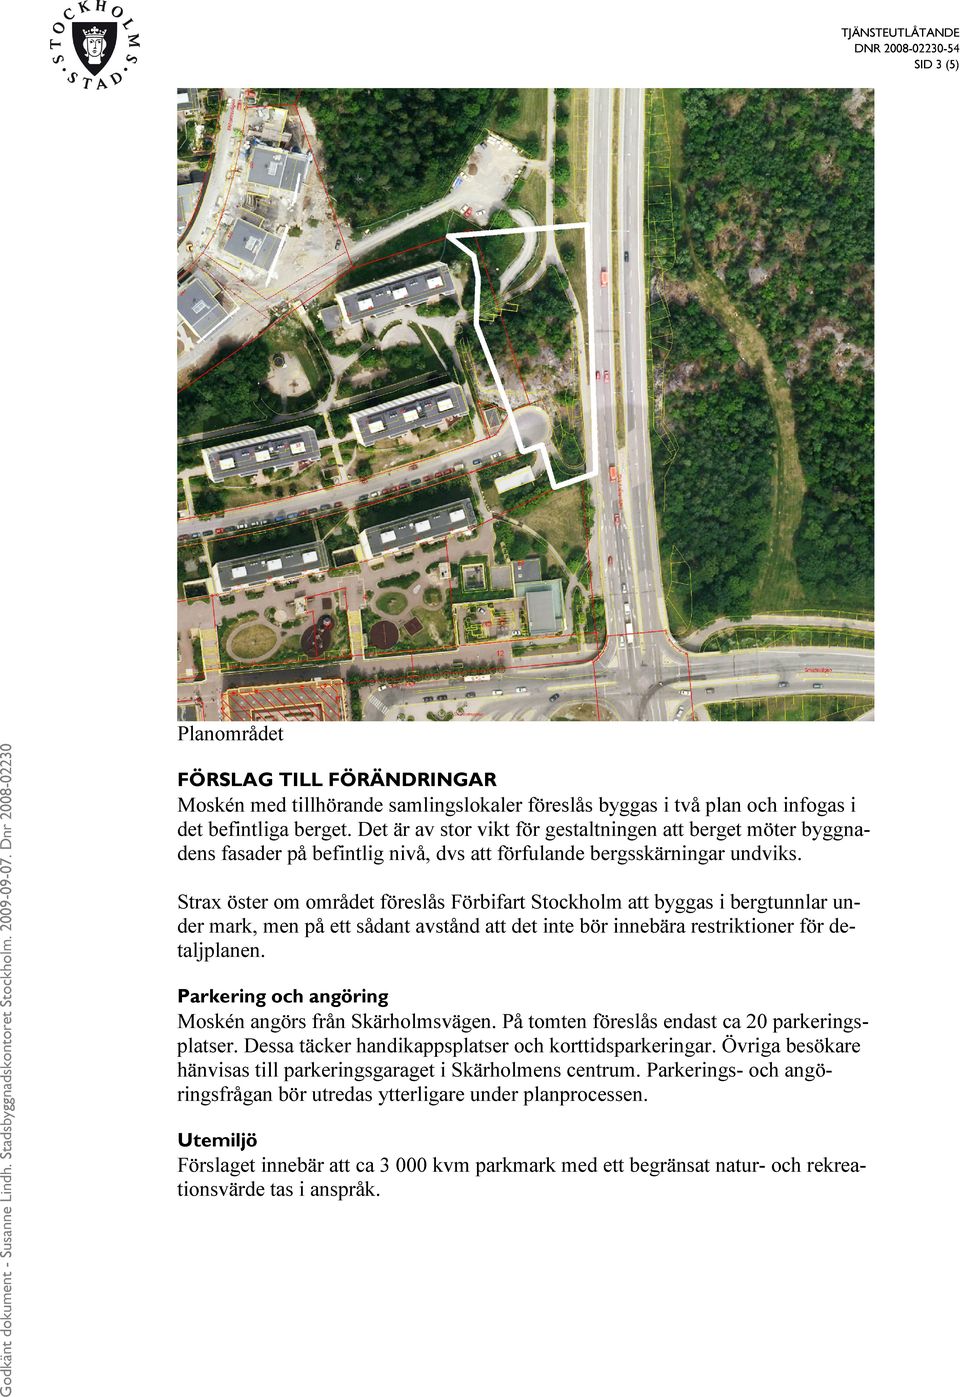 Strax öster om området föreslås Förbifart Stockholm att byggas i bergtunnlar under mark, men på ett sådant avstånd att det inte bör innebära restriktioner för detaljplanen.